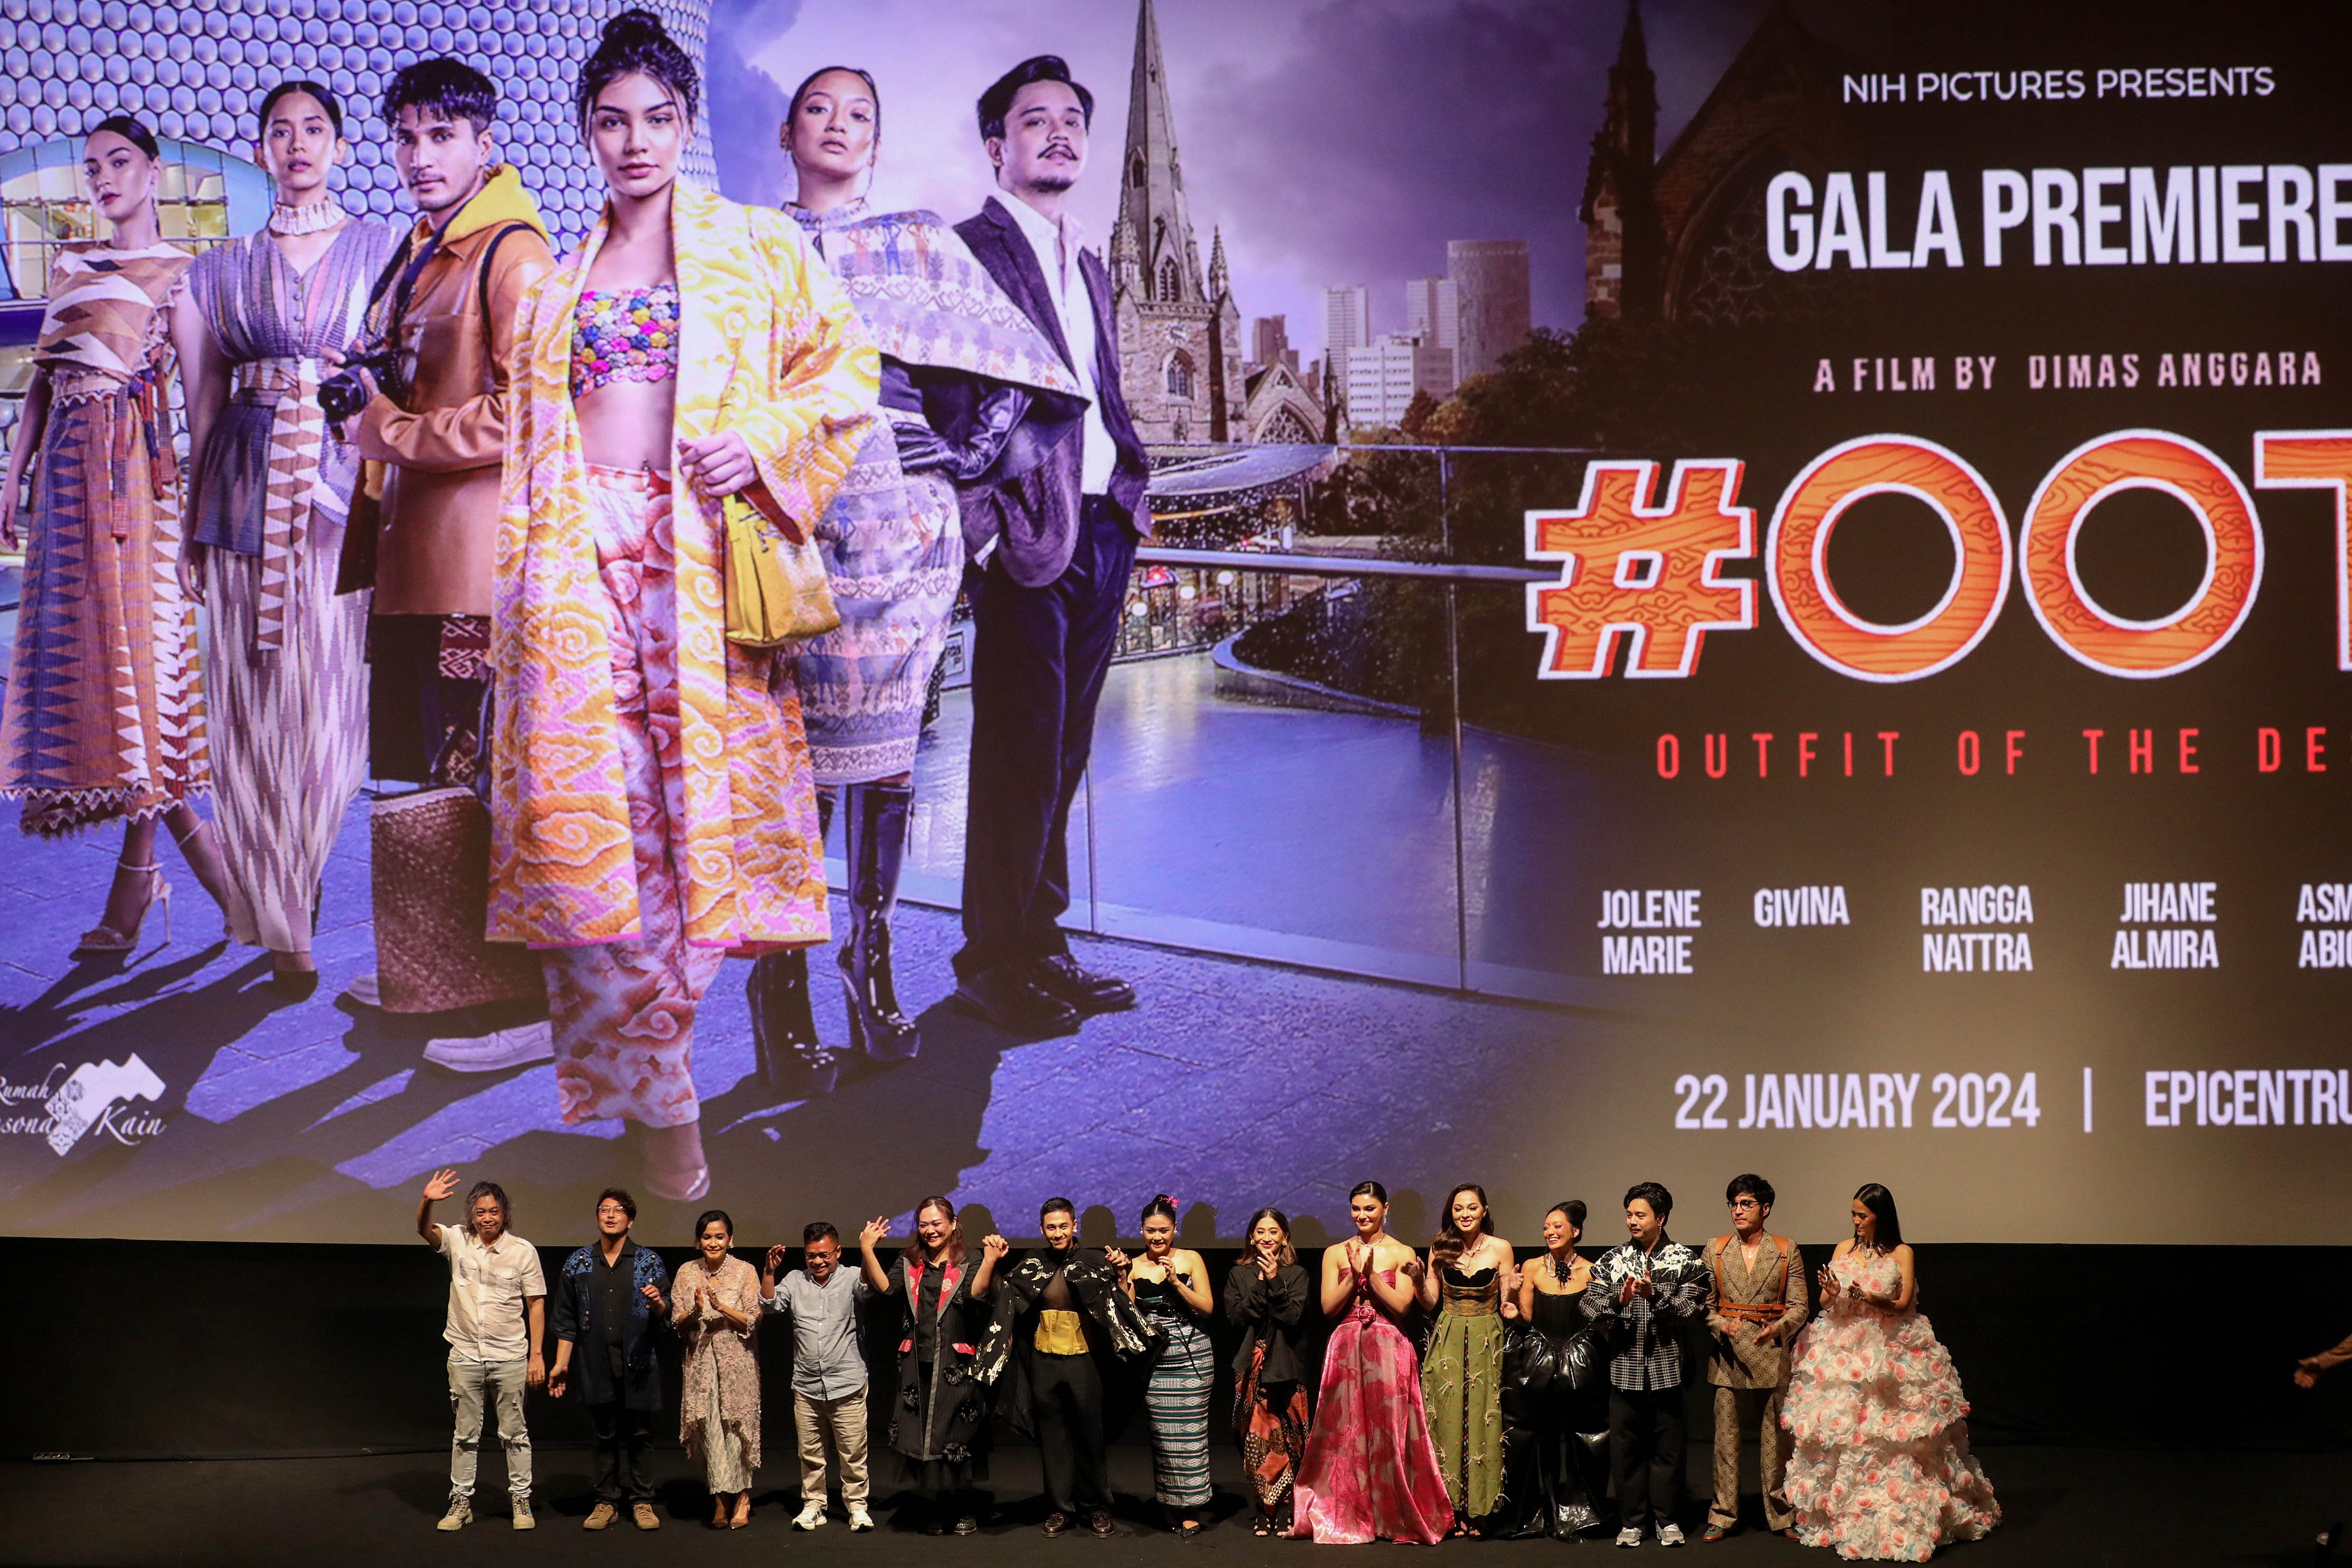 Suasana saat berlangsungnya acara Gala Premiere Film #OOTD (Outfit of The Designer) di Jakarta, Senin (22/1/2024). (Sumber gambar: Hypeabis.id/Eusebio Chrysnamurti)